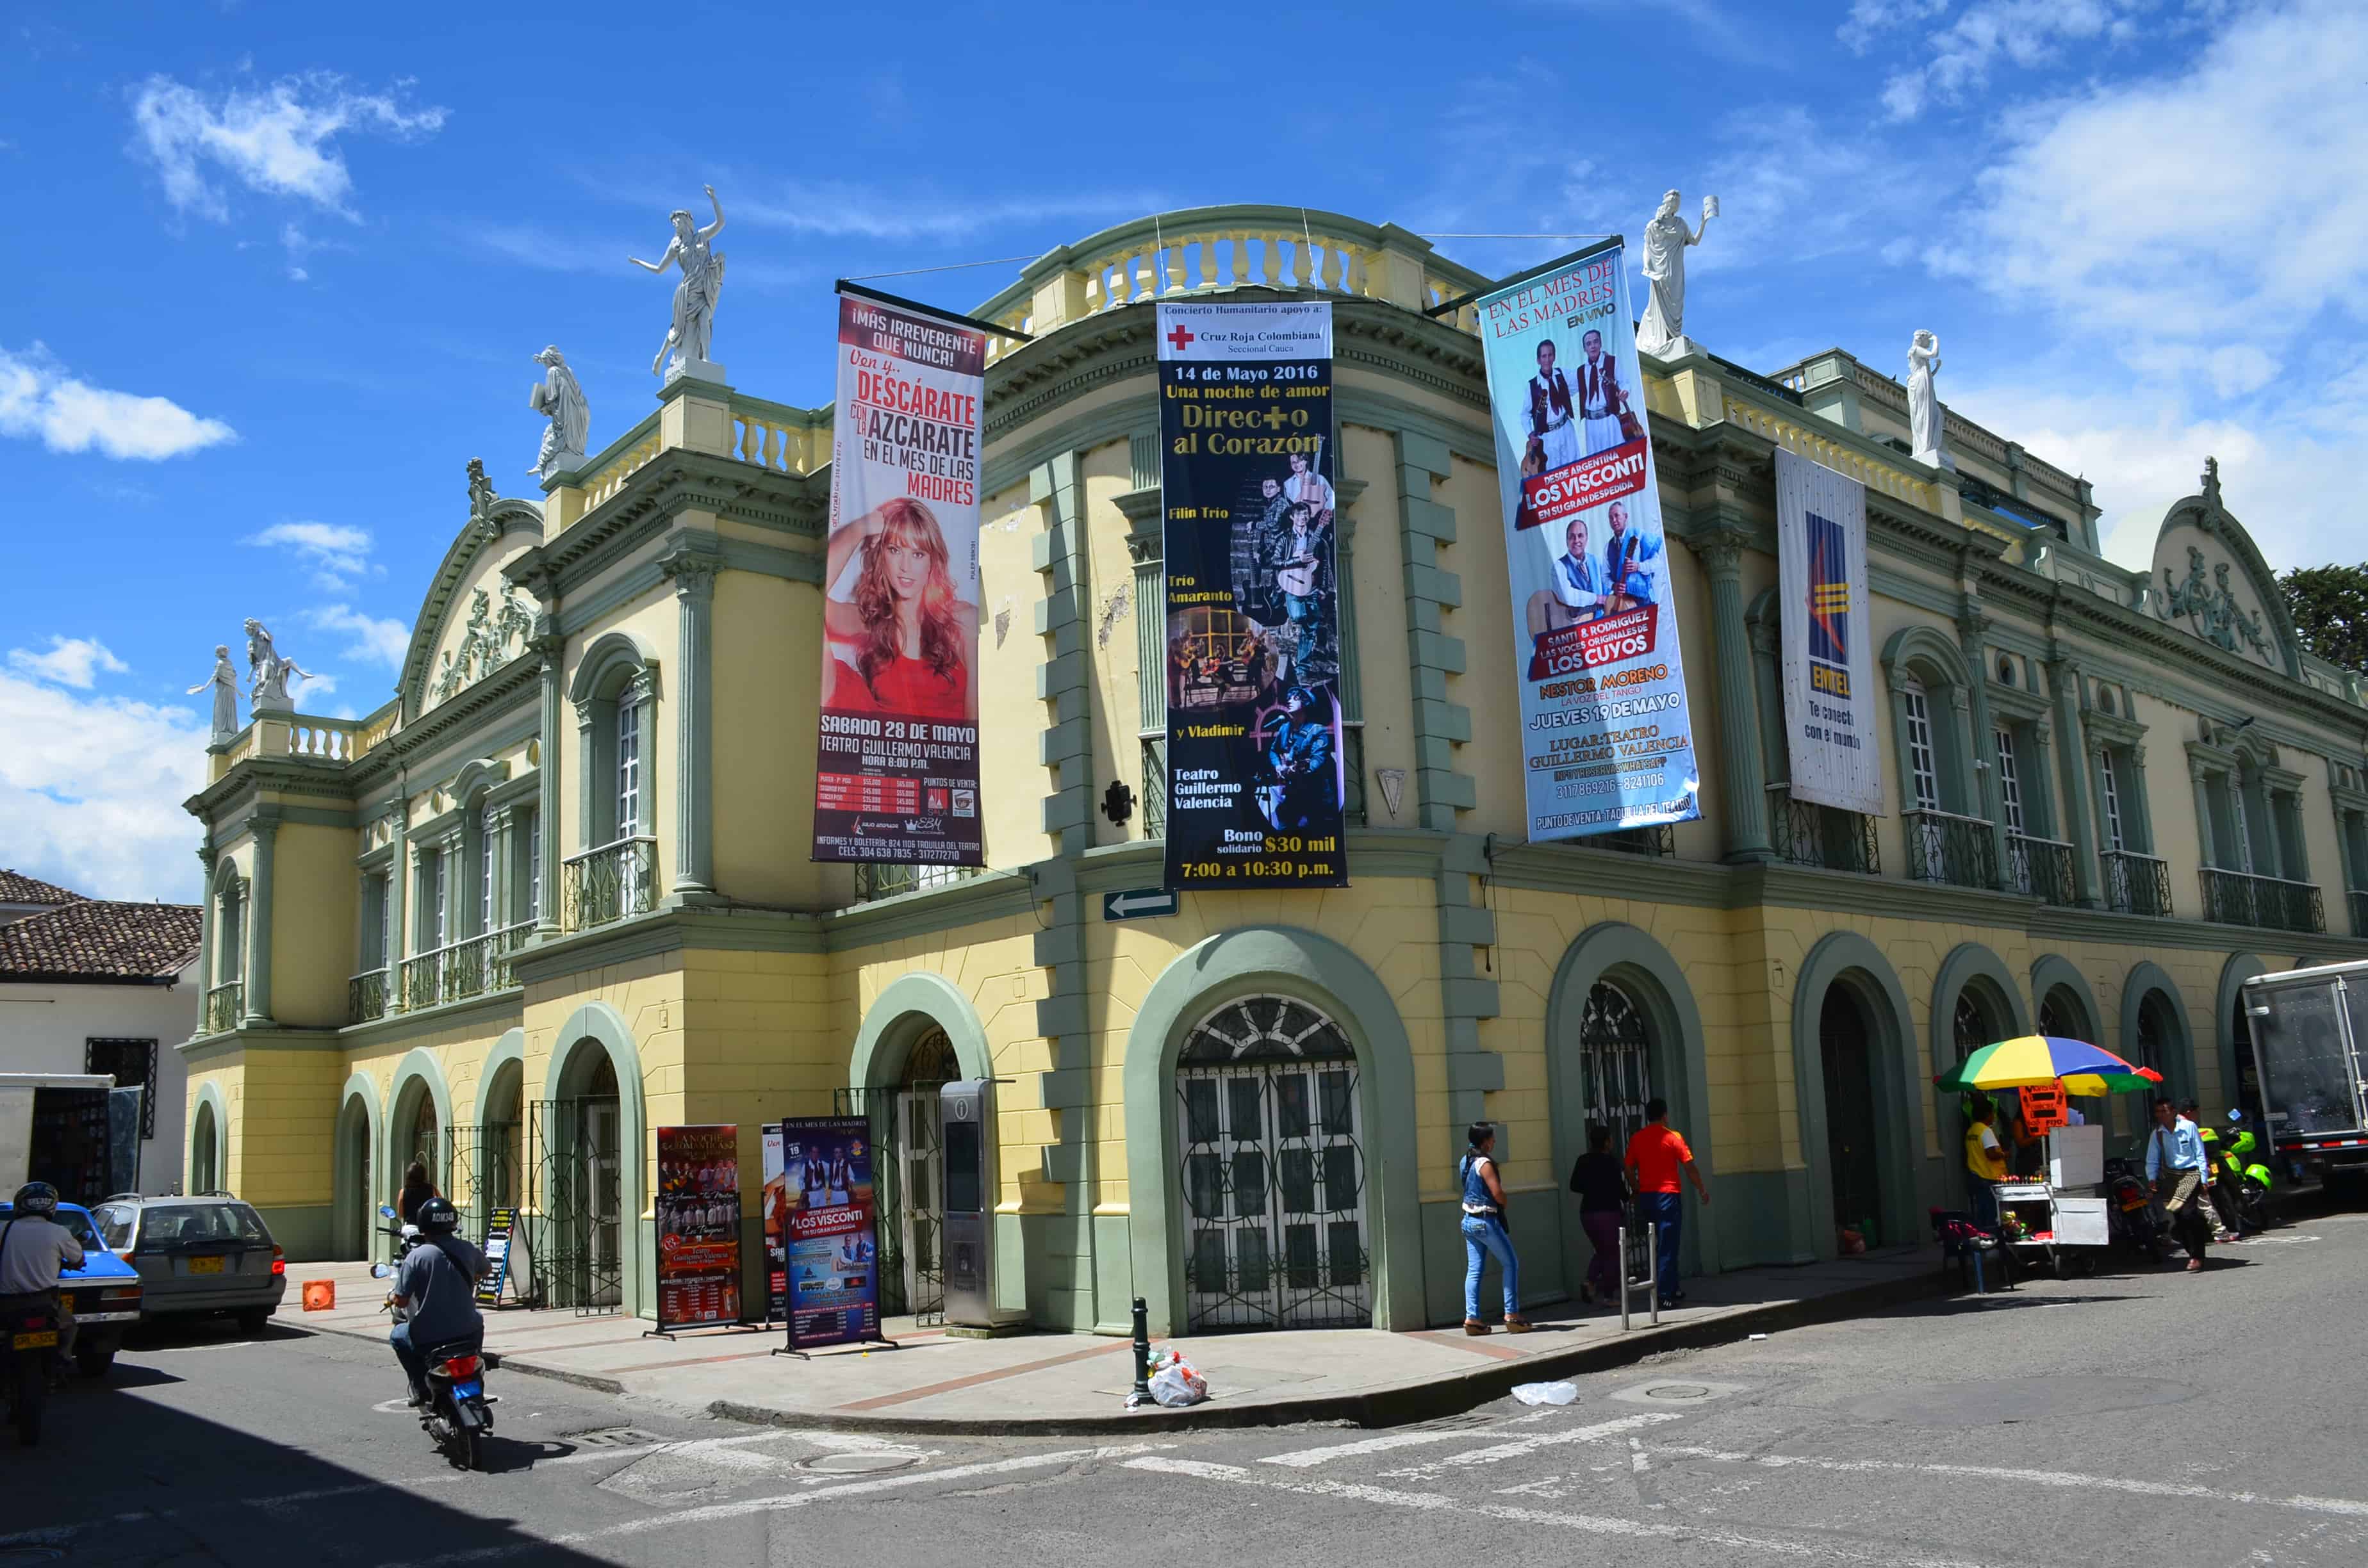 Teatro Municipal Guillermo Valencia in Popayán, Cauca, Colombia